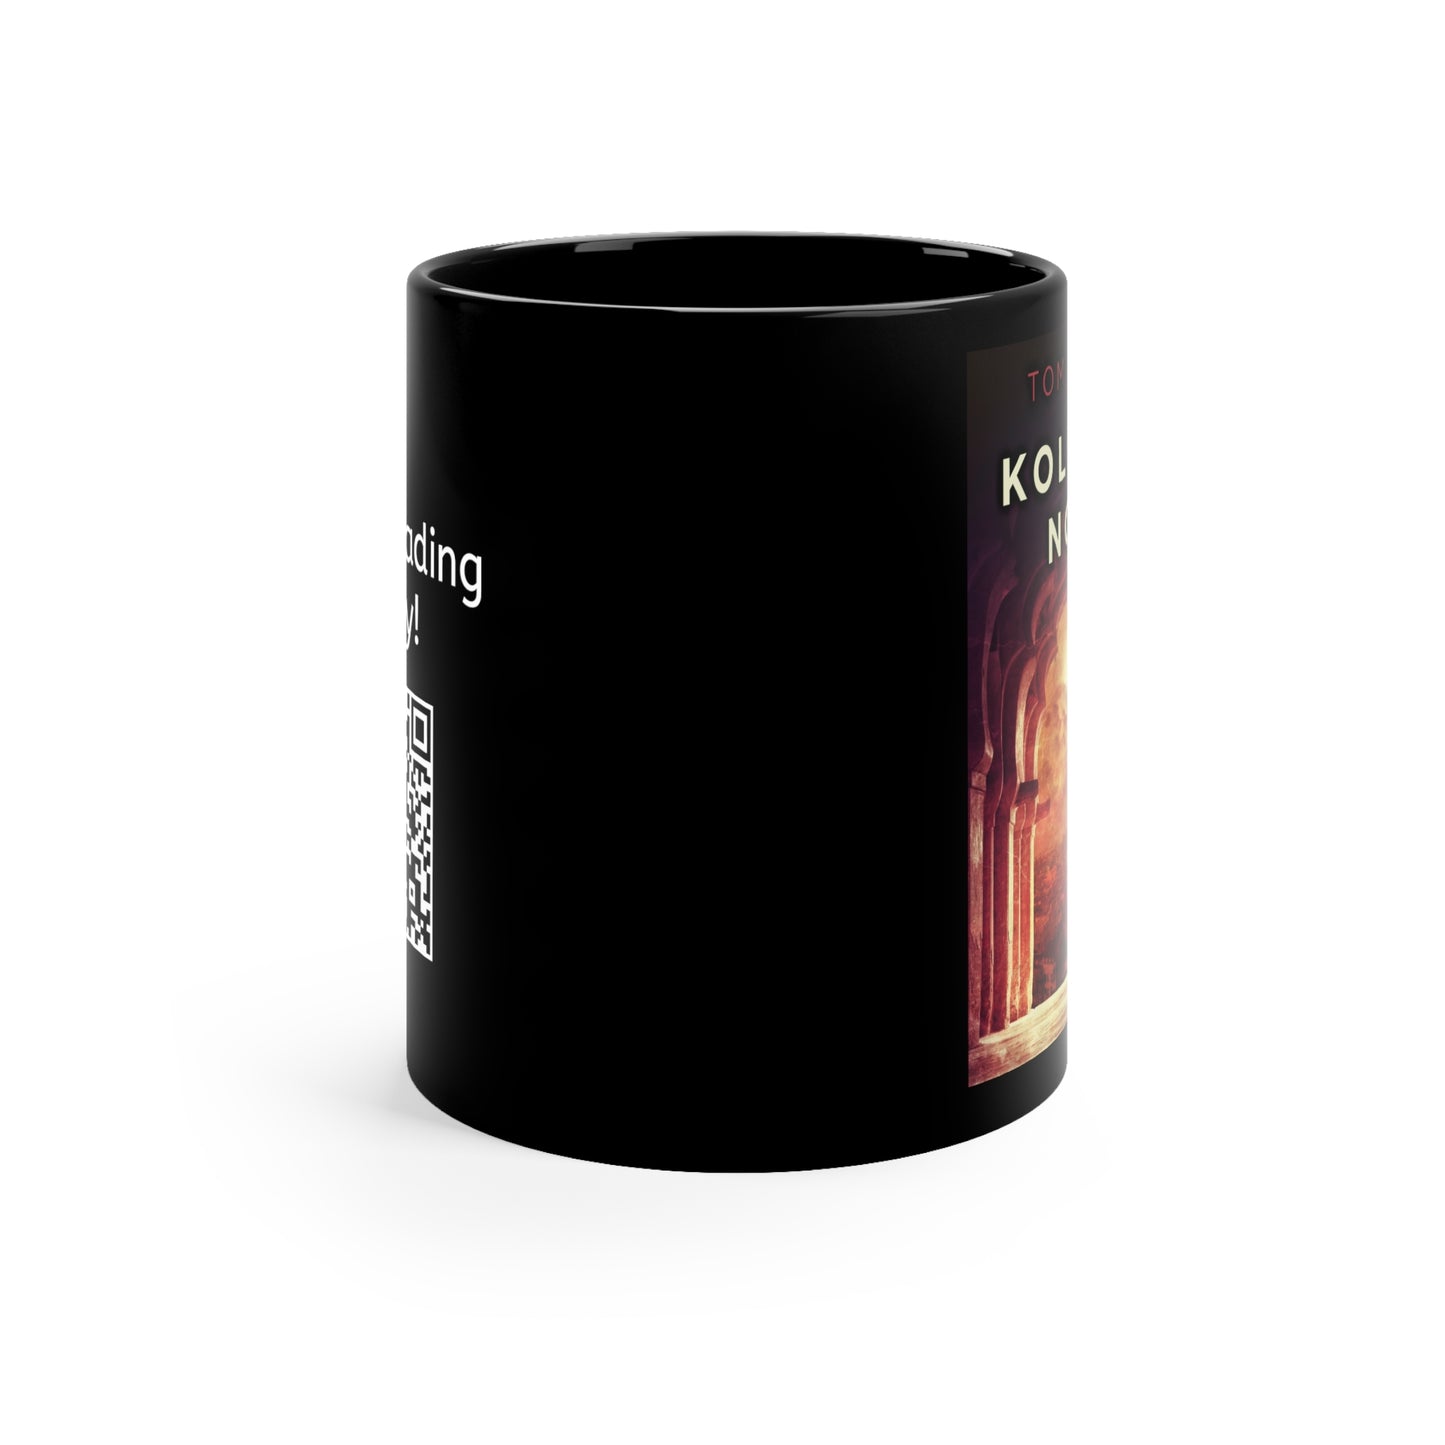 Kolkata Noir - Black Coffee Mug